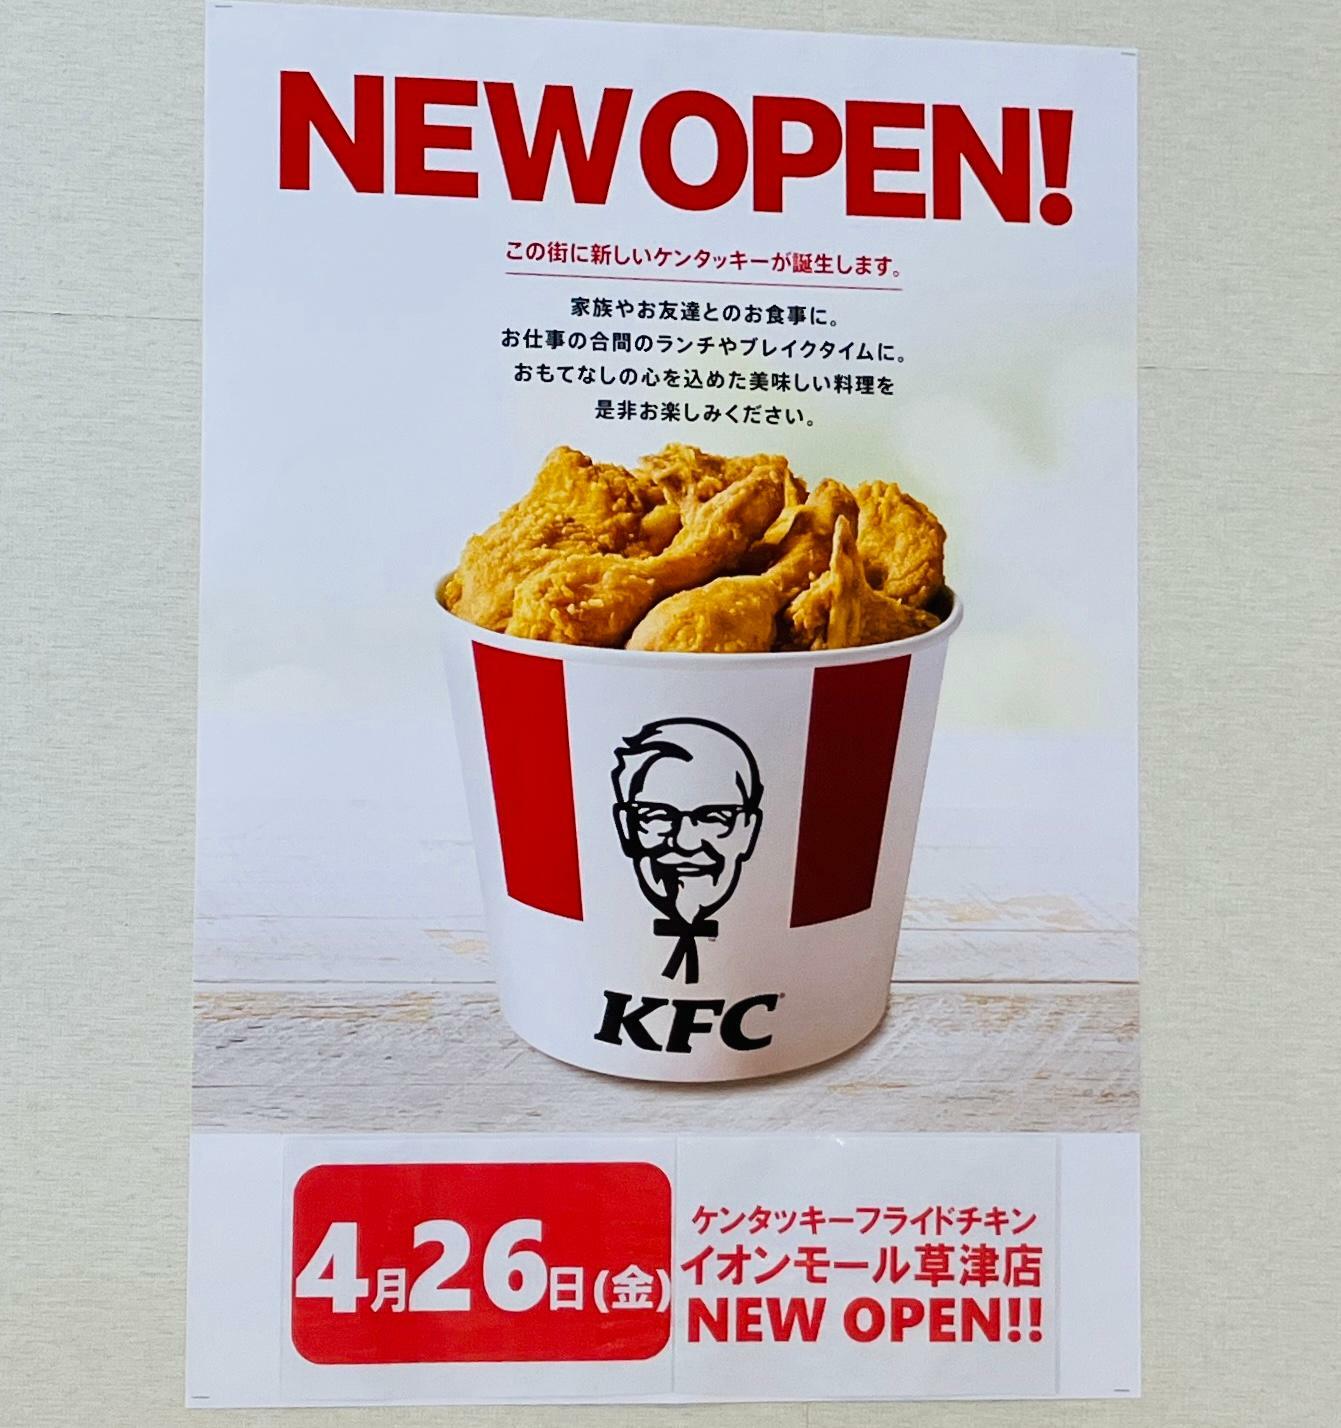 ※1階レストランコート「台湾小籠包」さん跡地に「ケンタッキーフライドチキン」もオープン予定。